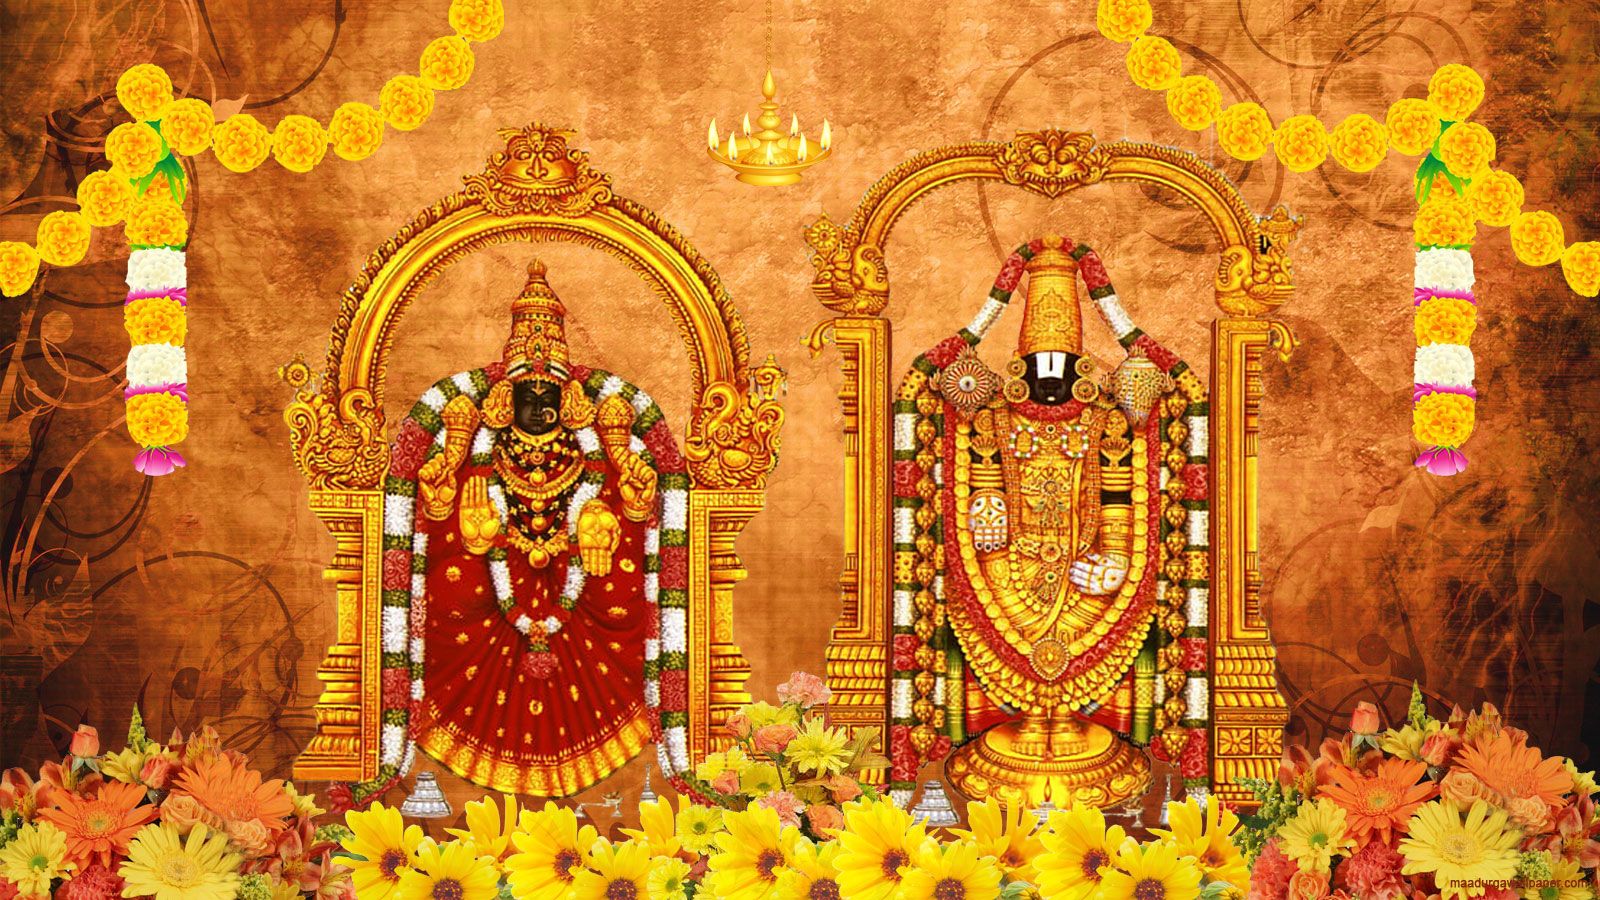 Lord Venkateswara image wallpaper, HD Photo full size download